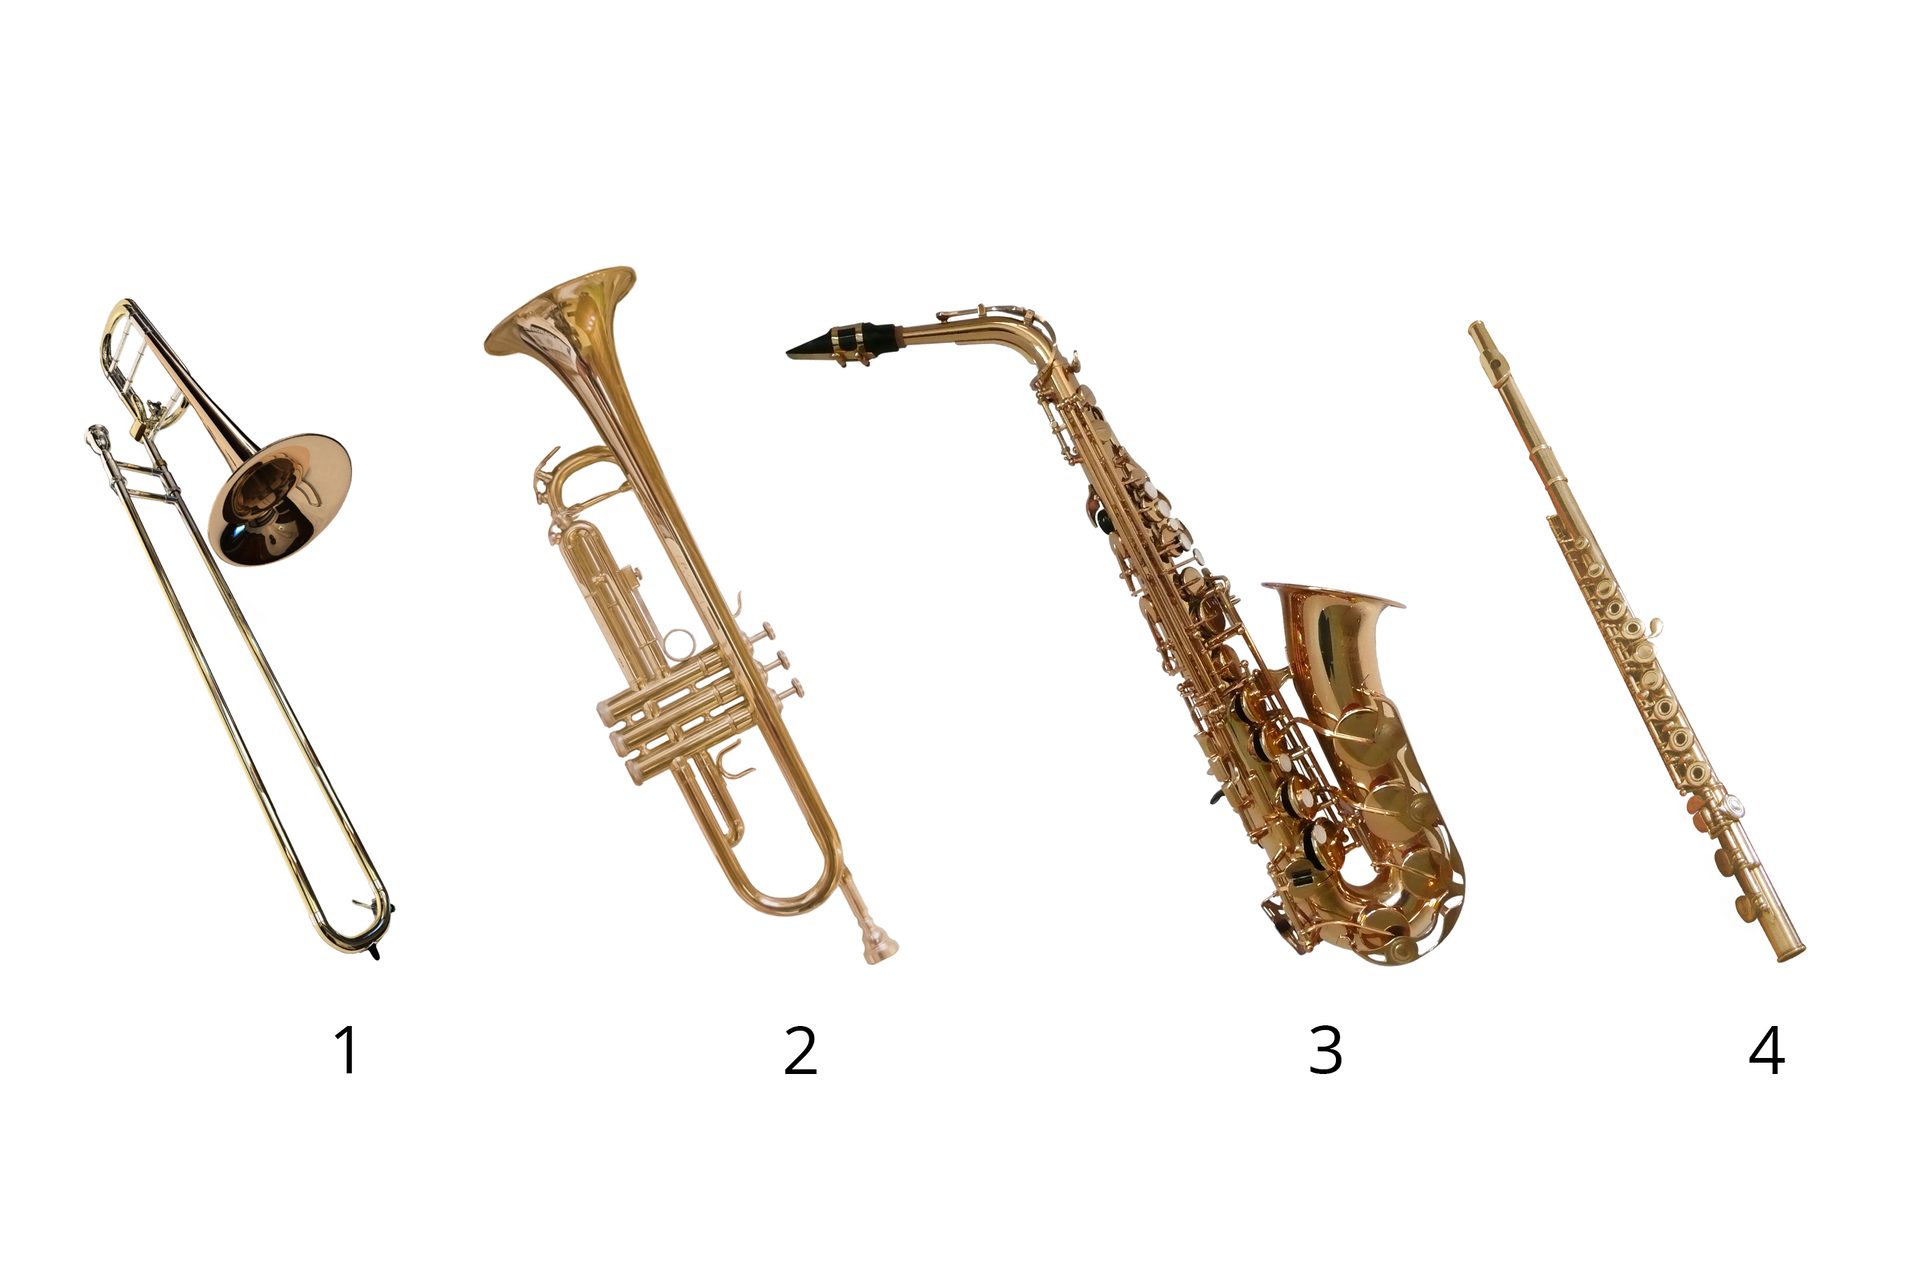 Ilustracja składa się z czterech zdjęć przedstawiających instrumenty wykonane z mosiądzu, ponumerowane od lewej strony. Numer 1 to puzon, numer 2 to trąbka, a numer 3 to saksofon. Numer 4 to flet altowy wykonany z mosiądzu złotego. Puzon to instrument dęty, zbudowany z dwóch długich metalowych rurek w kształcie litery U, które połączone są ze sobą, tworząc literę S. Jedna z nich zakończona jest ustnikiem, w który się dmucha. Druga znacznie się rozszerza, tworząc czarę głosową. Trąbka to podłużny złoty instrument zakończony czarą głosową. Po przeciwnej stronie znajduje się ustnik, w który się dmucha. Trąbka posiada trzy wentyle, które naciska się podczas gry w celu uzyskania odpowiedniego dźwięku. Flet to podłużny instrument posiadający klapy, które w czasie gry zatyka się palcami w celu uzyskania odpowiedniego dźwięku. Flet również posiada część, w którą się dmucha. Saksofon składa się z metalowej rury w kształcie fajki, wyposażony jest w klapy i stroik w który się dmucha.